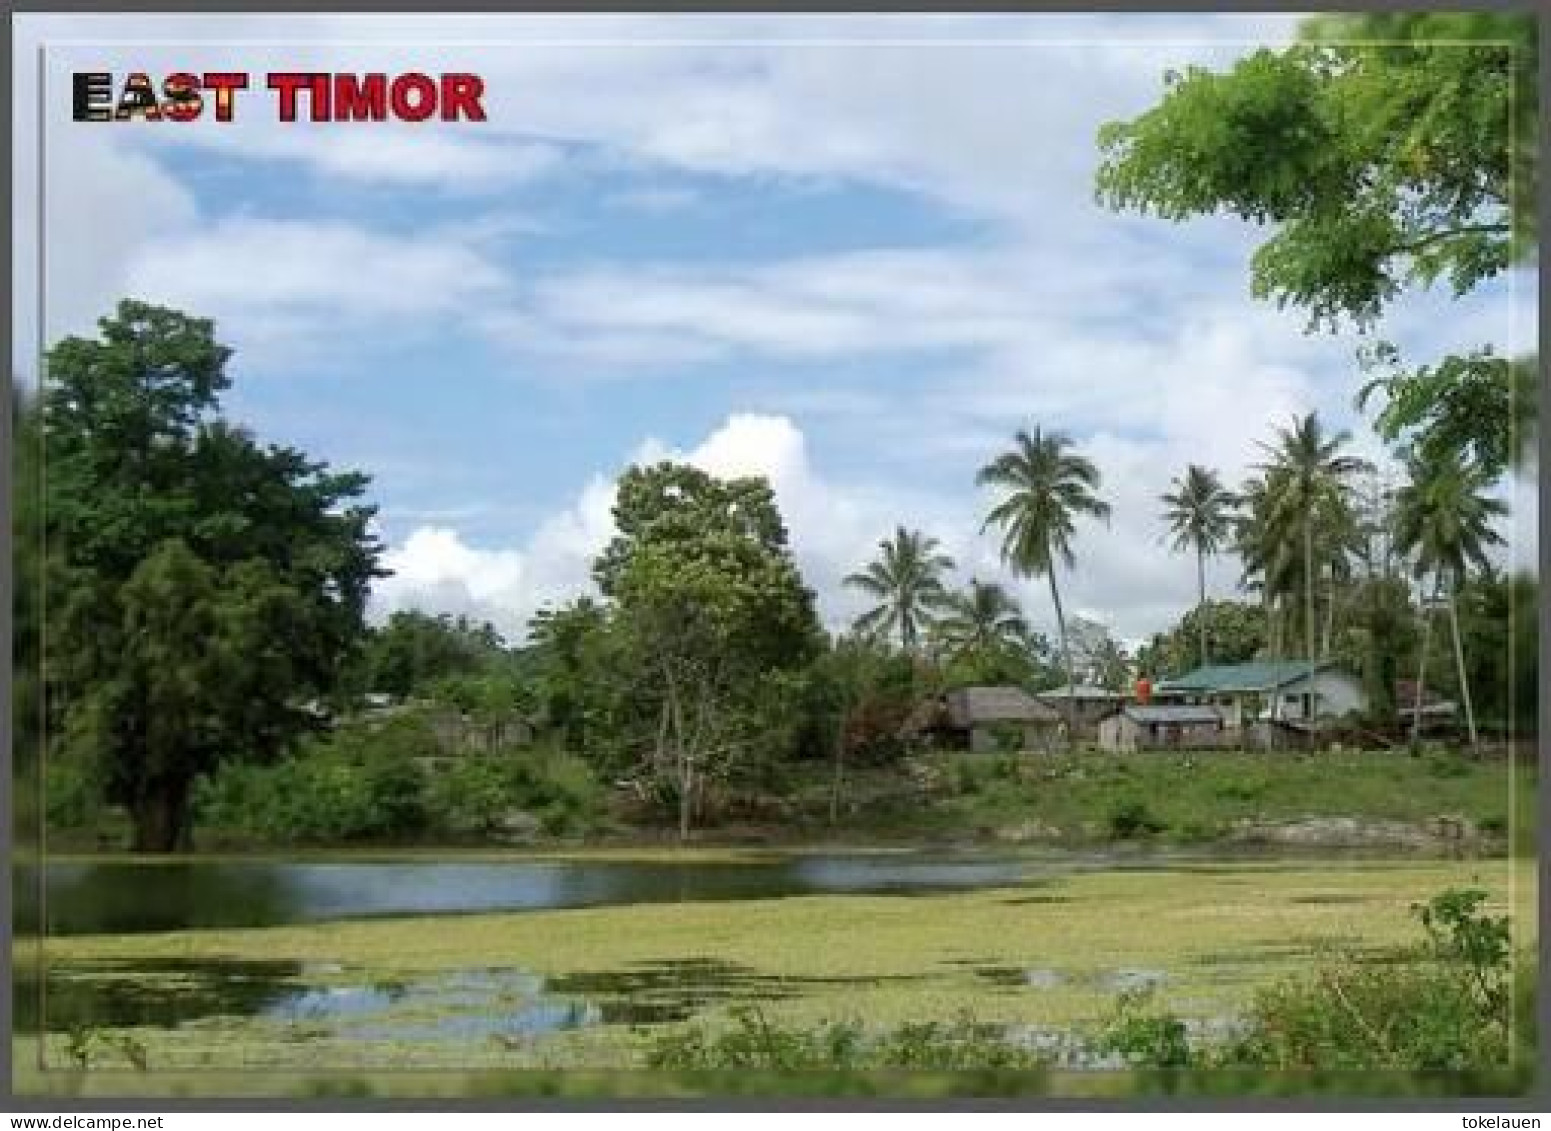 East Timor Timor Leste Loro Sae South East Asia - Oost-Timor